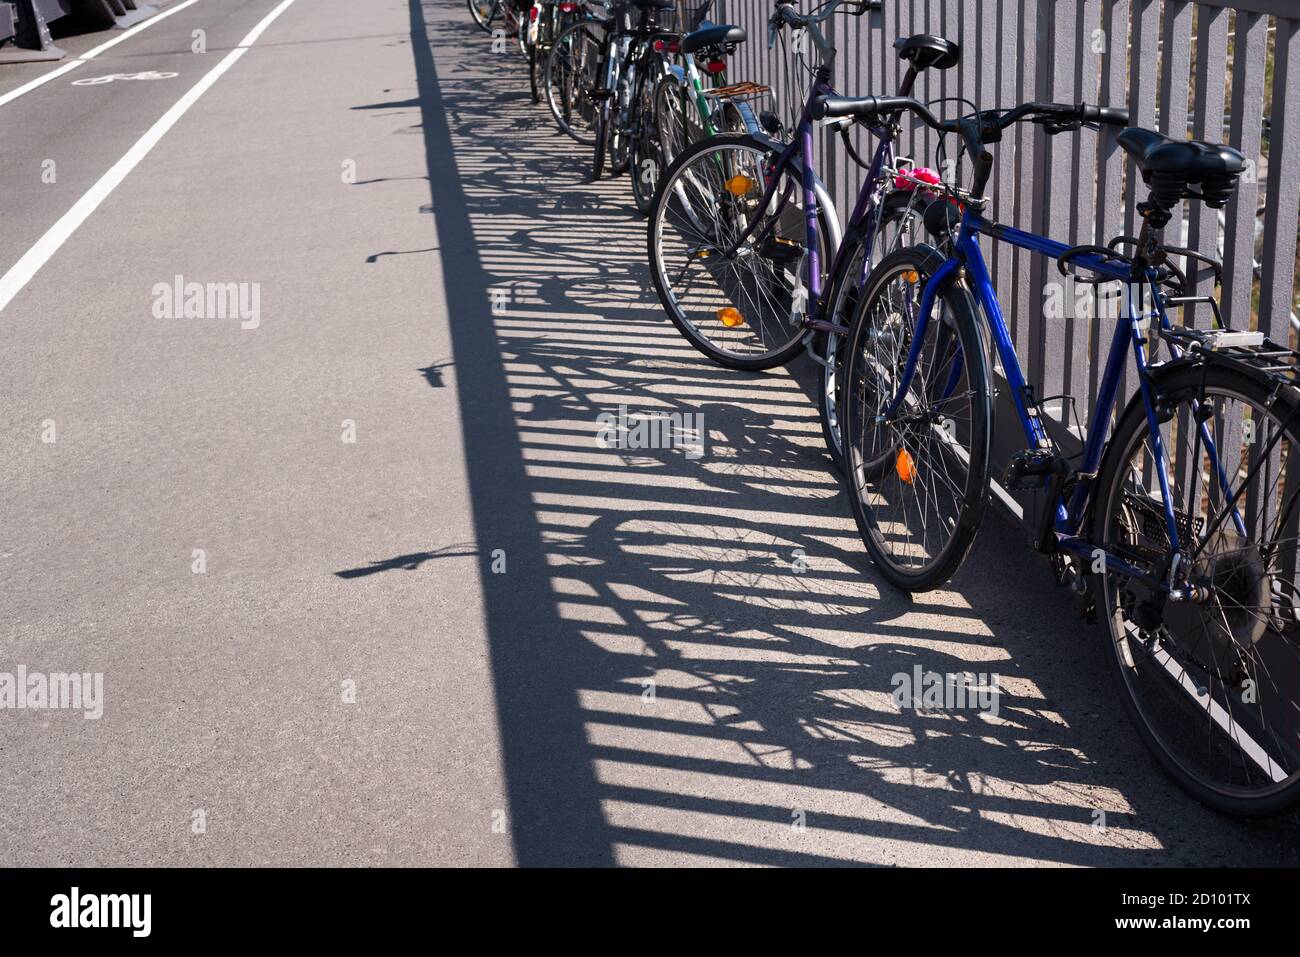 Chaotische Fahrrad/bike Parken in einer Stadt - Verkehr, öffentlicher Verkehr - gestohlene Fahrräder, alte Fahrräder, Fahrrad Diebstahl - Kopie Raum Stockfoto